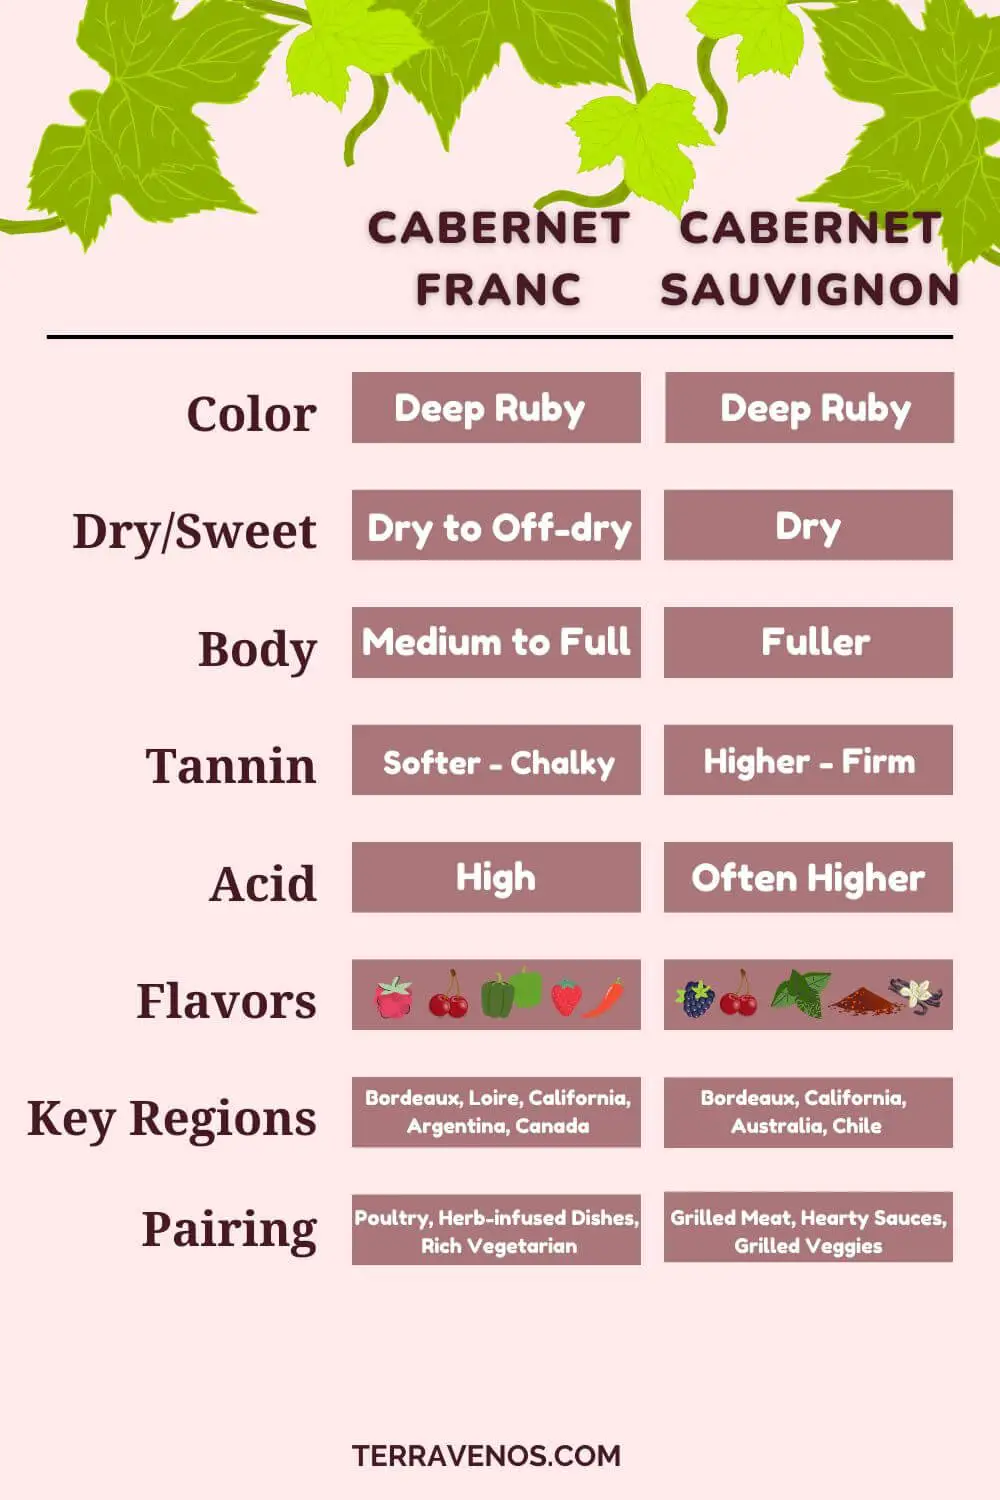 cabernet franc vs cabernet sauvignon comparison infographic 